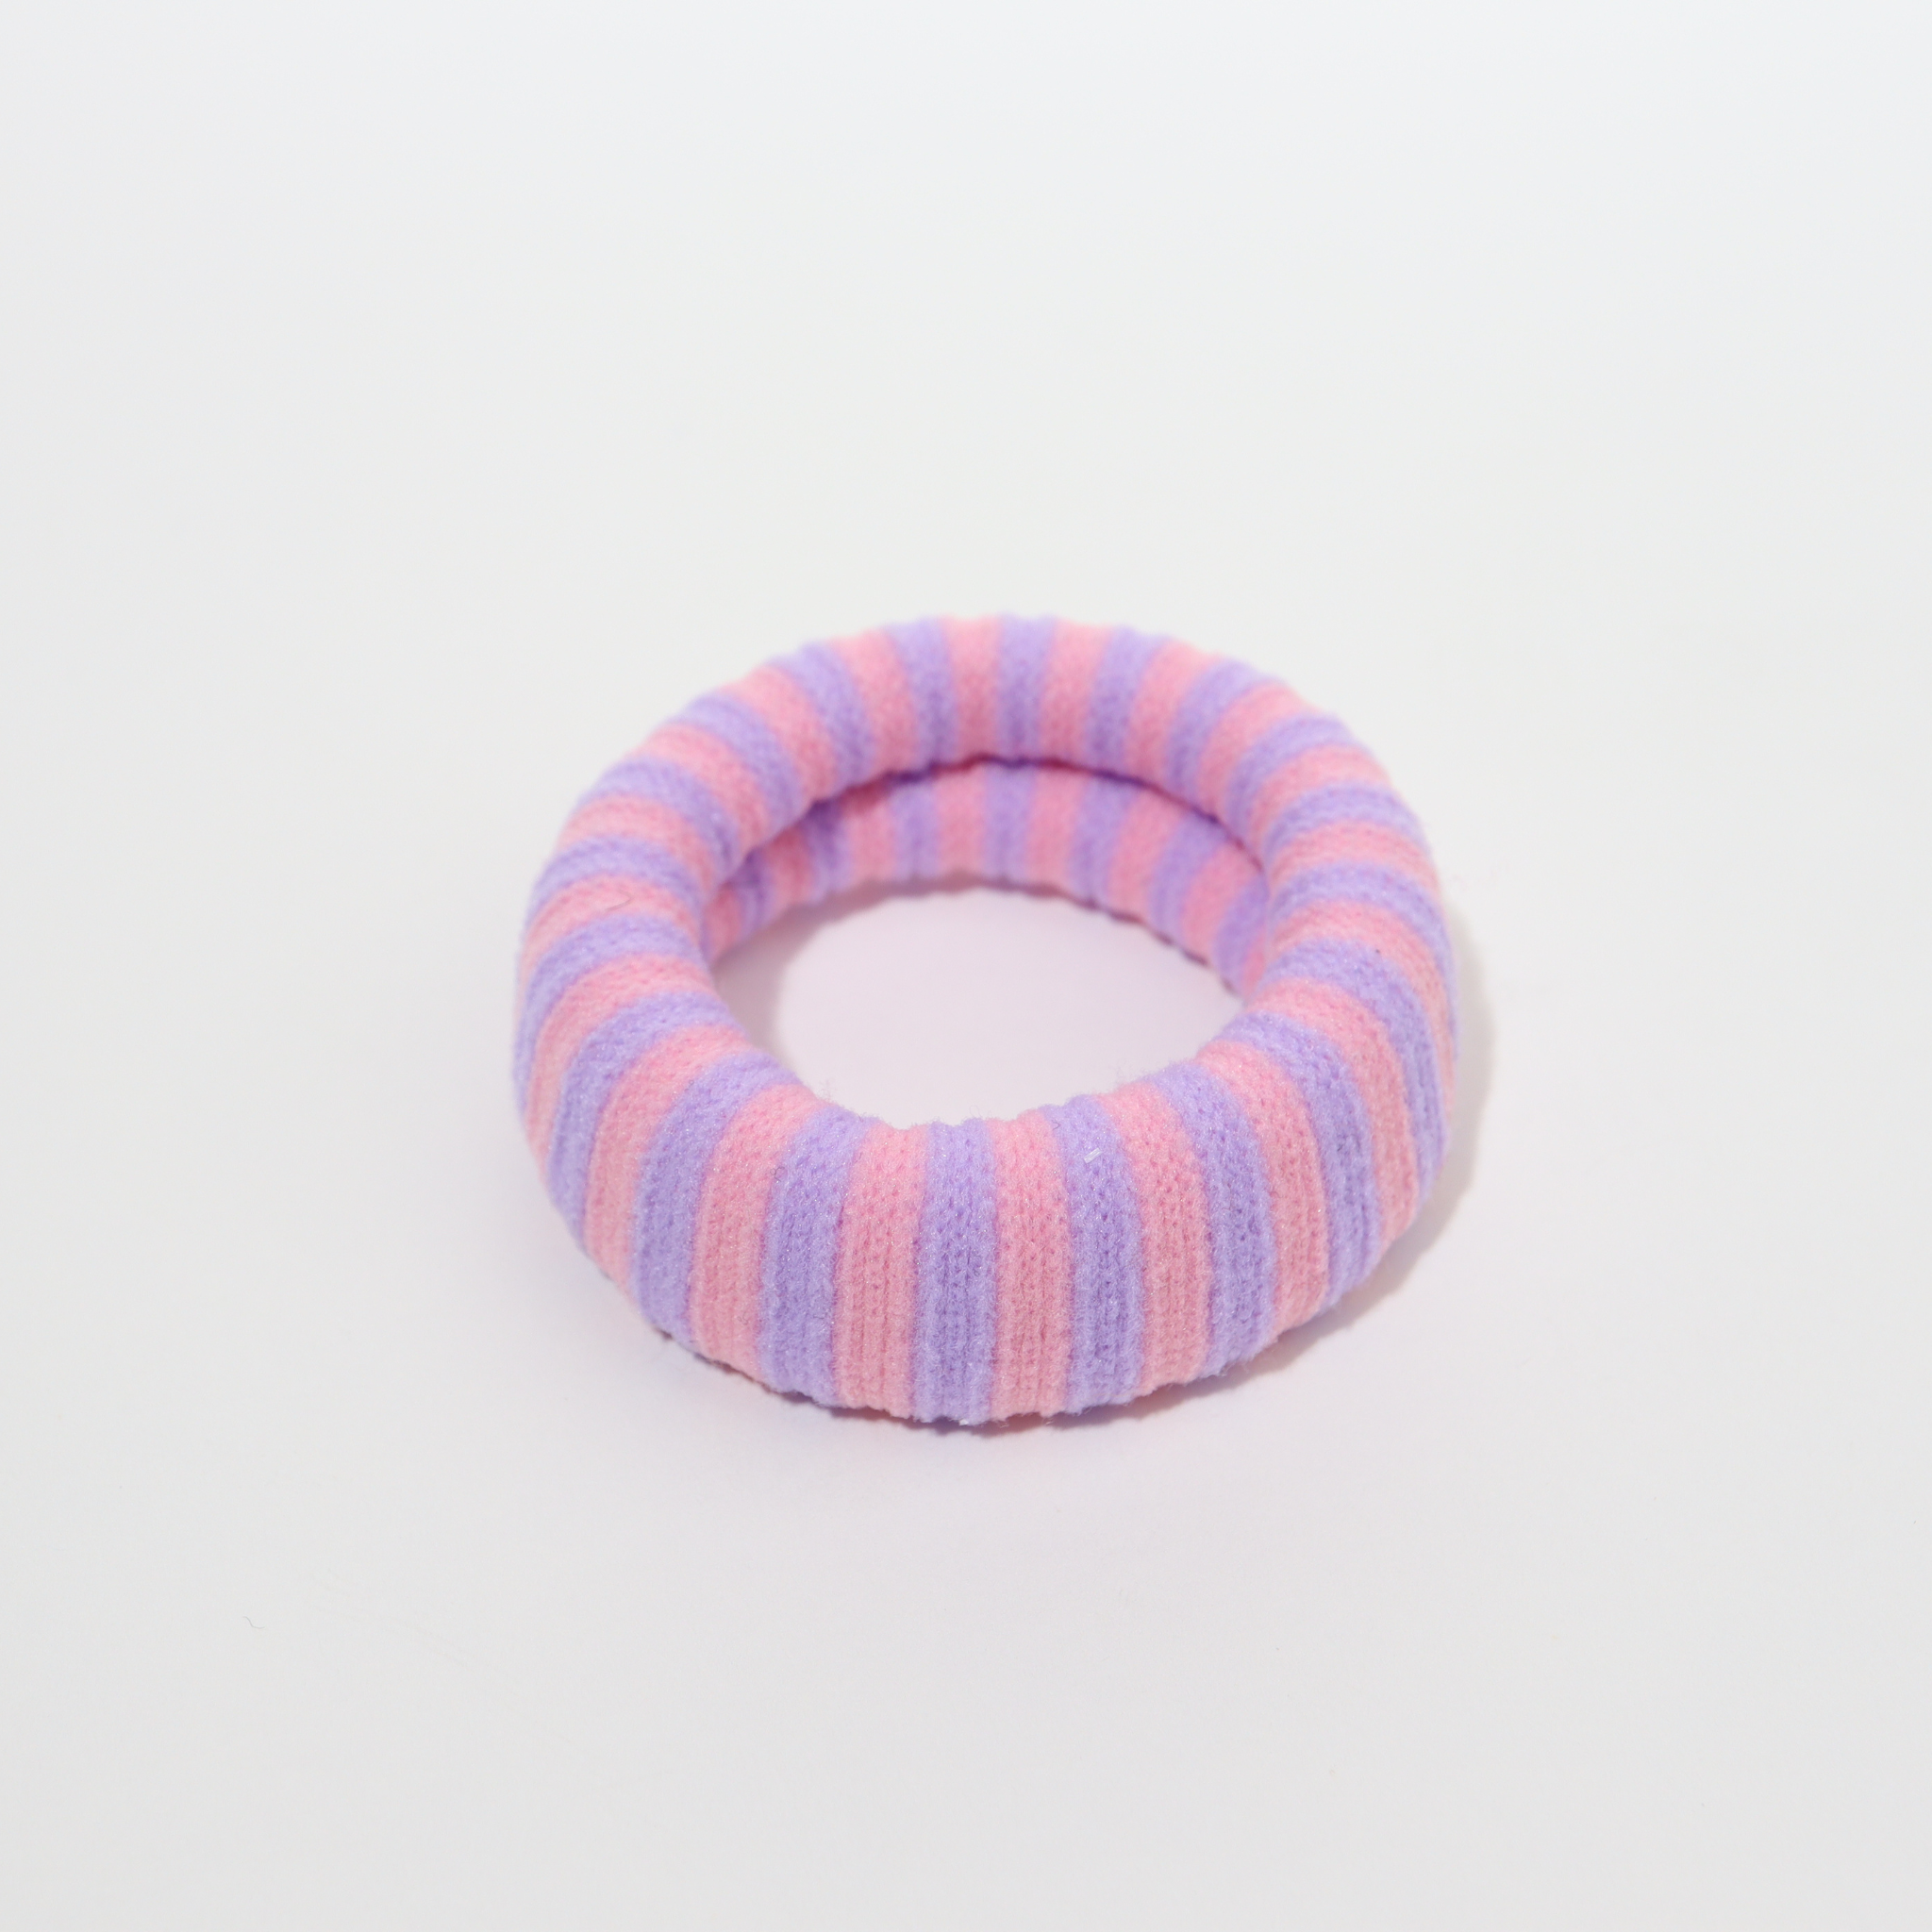 Þykk hárteygja - pink/lilac striped